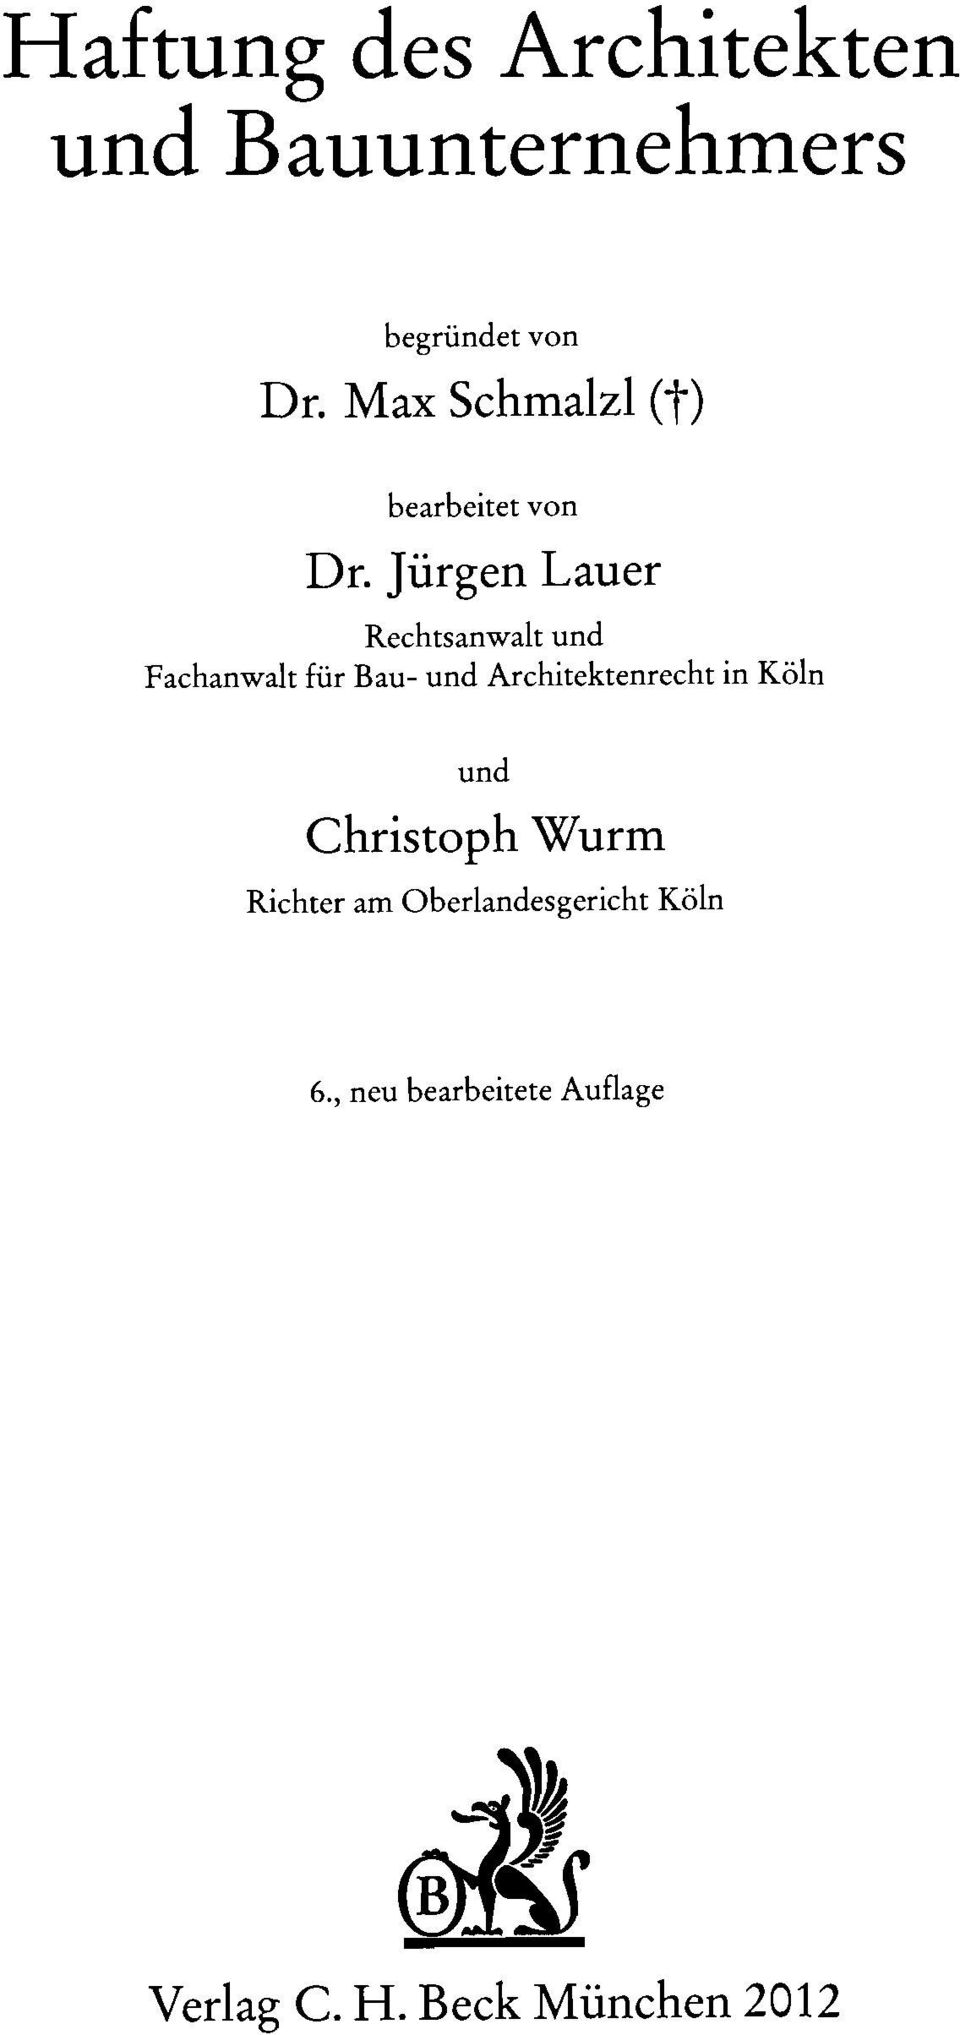 Jürgen Lauer Rechtsanwalt und Fachanwalt für Bau- und Architektenrecht